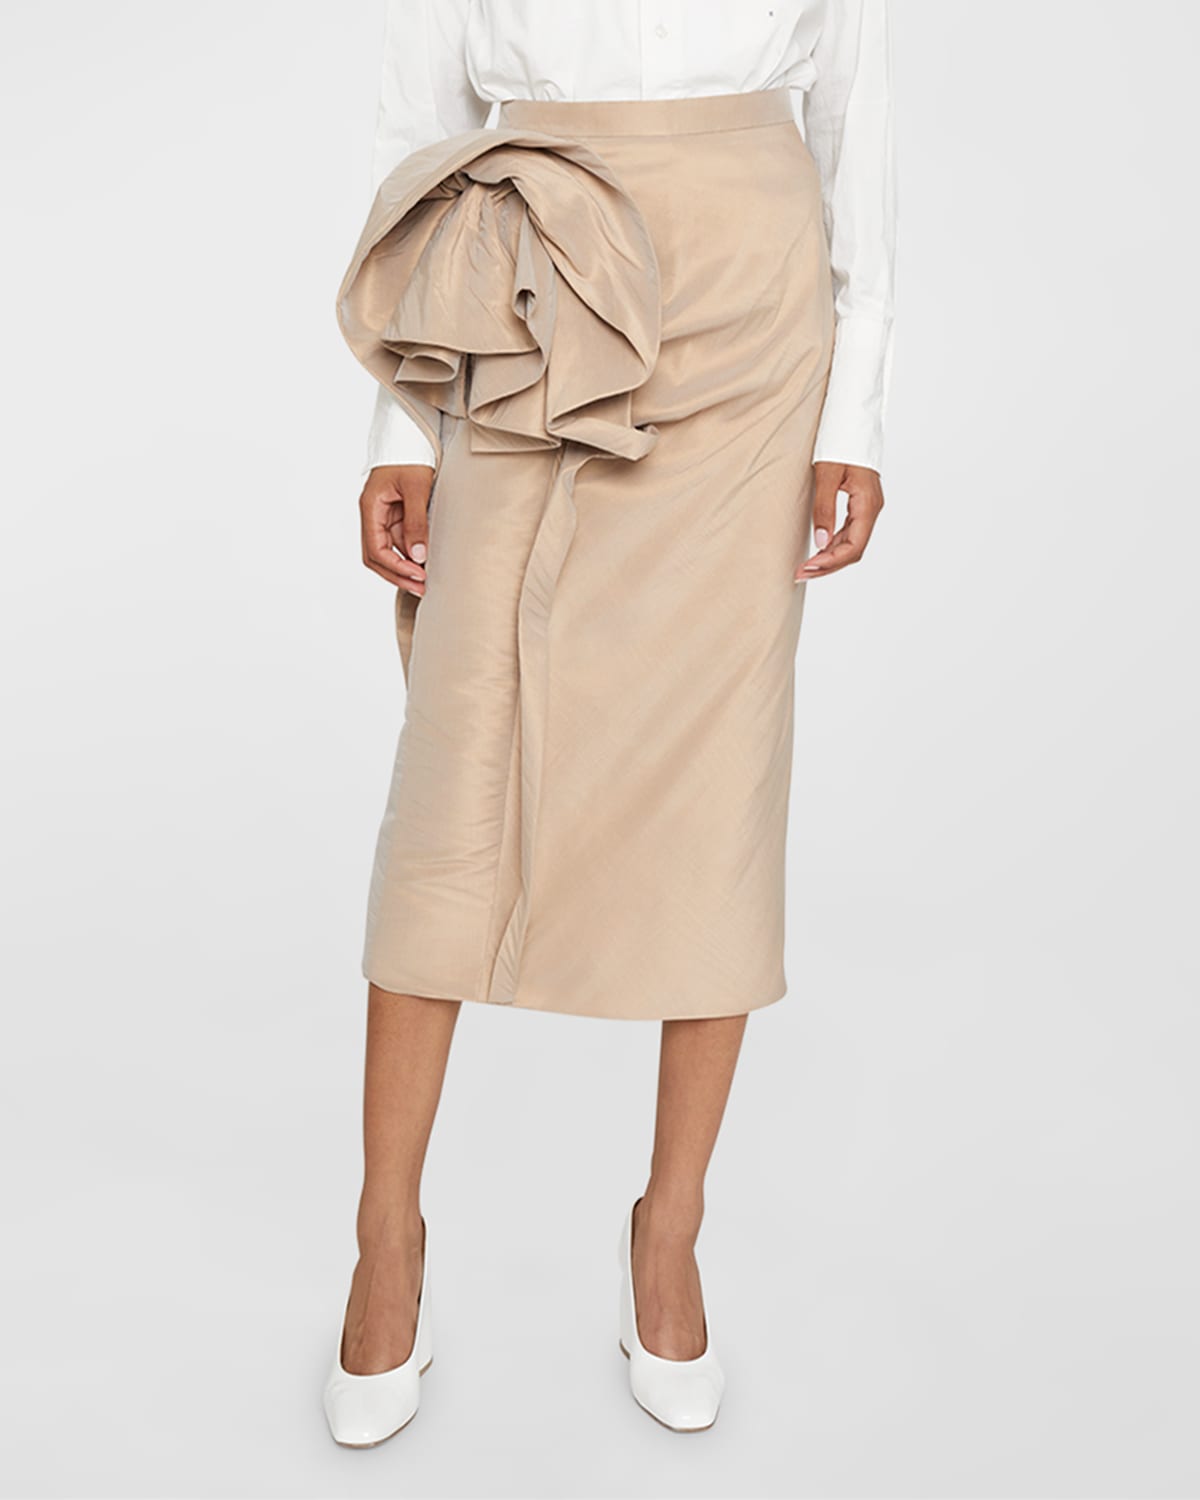 Rosette Midi Skirt